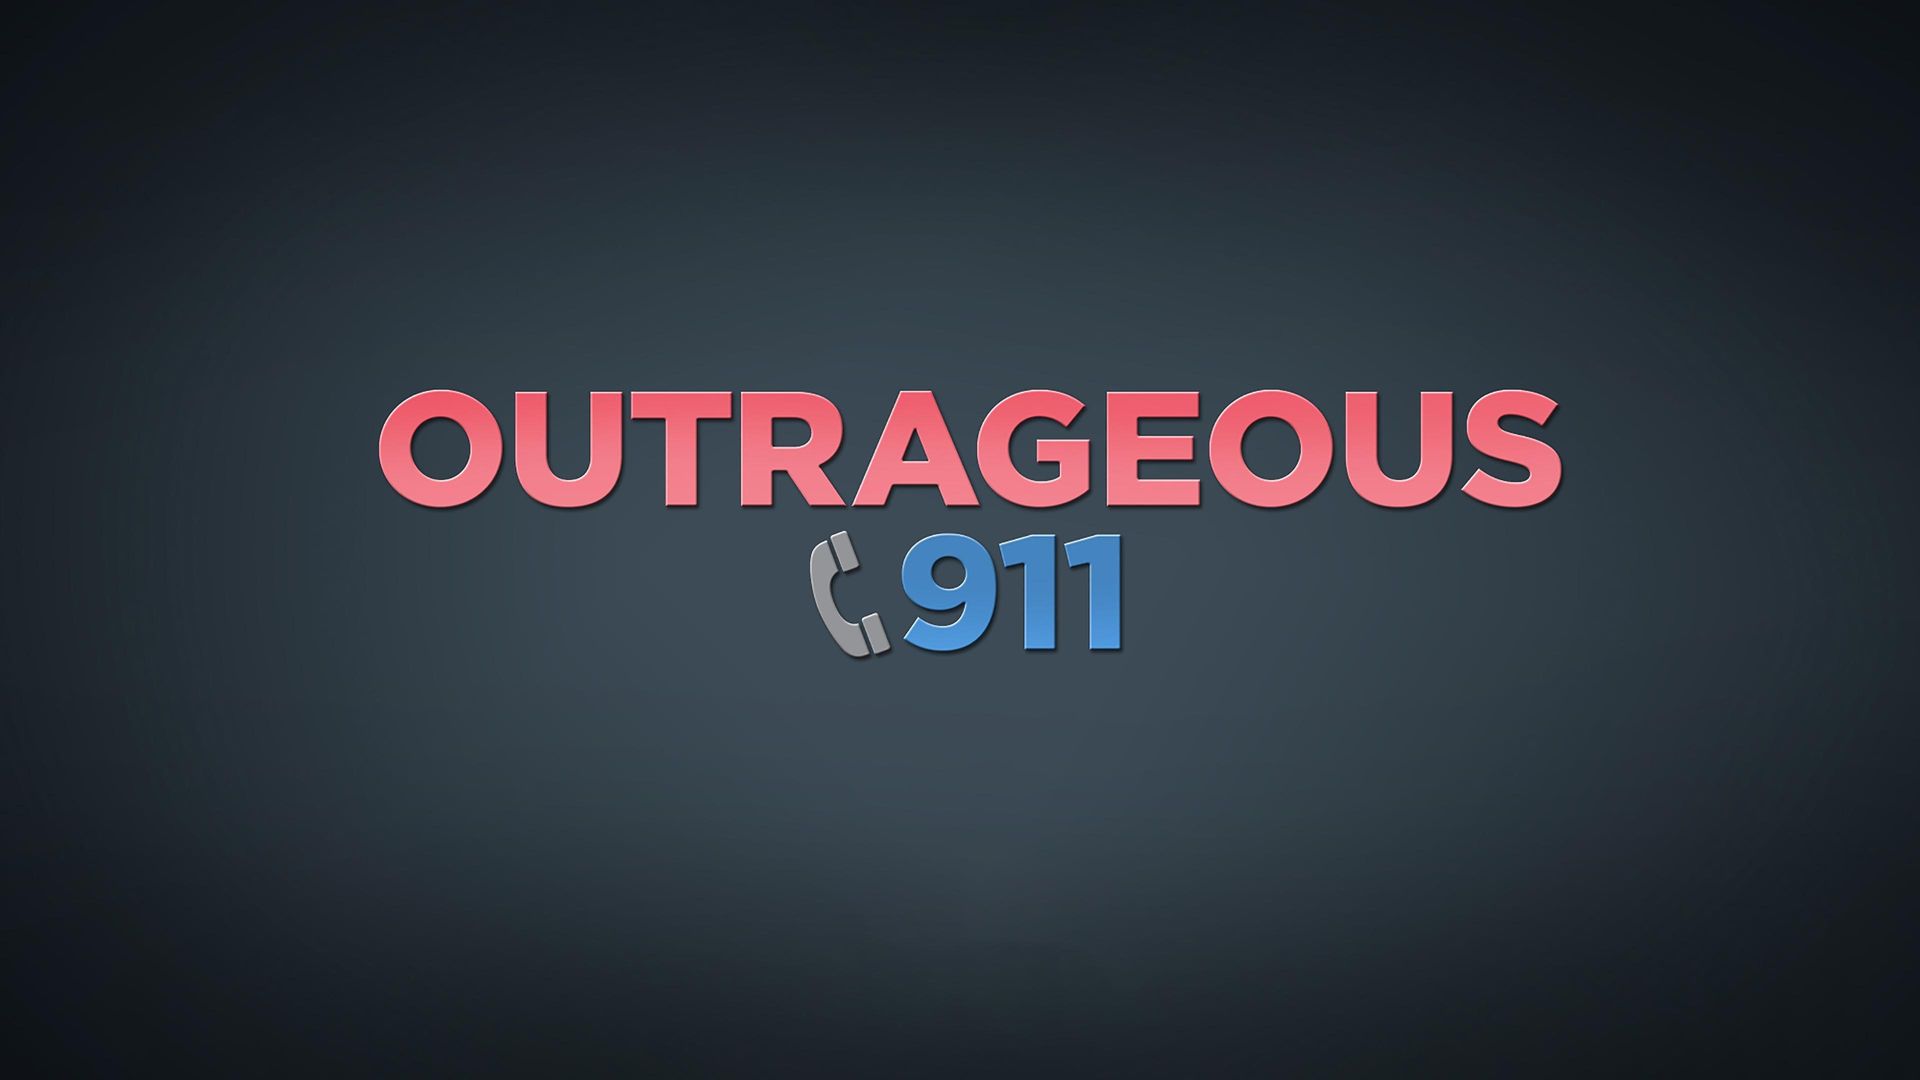 Outrageous 911 Backdrop